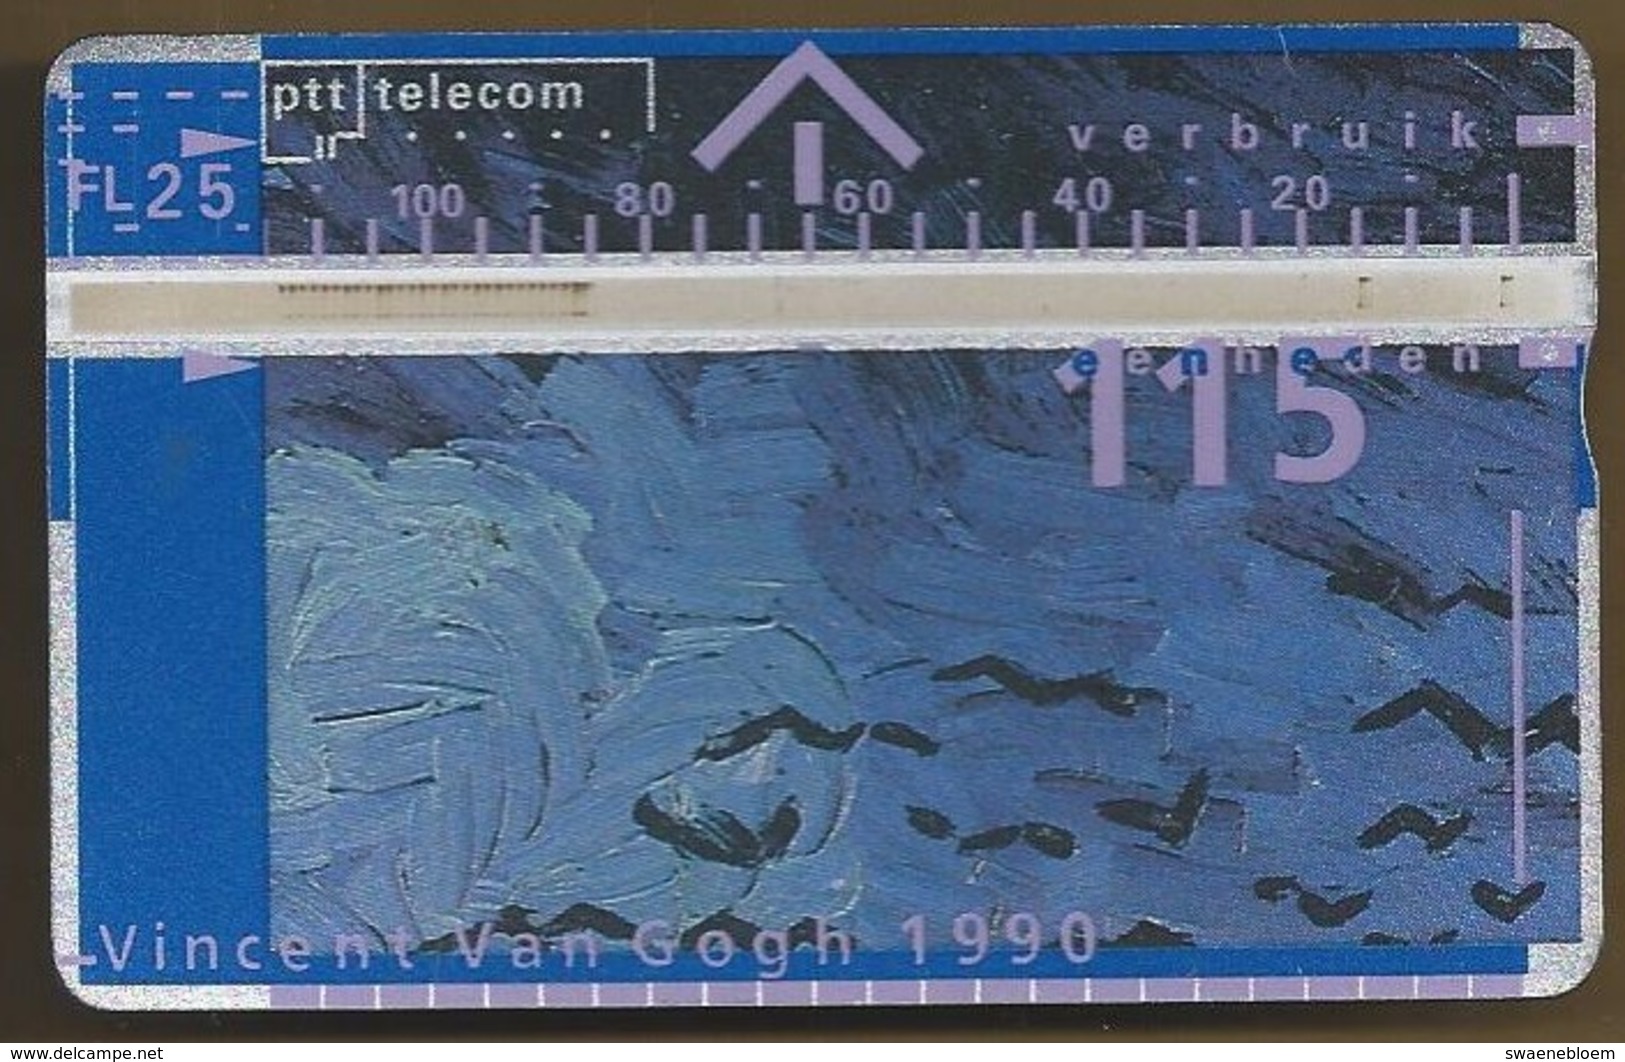 Telefoonkaart.- 005C05002. Nederland. PTT Telecom. 115 Eenheden. Vincent Van Gogh 1990. Auvers-sur-Oise, Juli 1890 - Openbaar